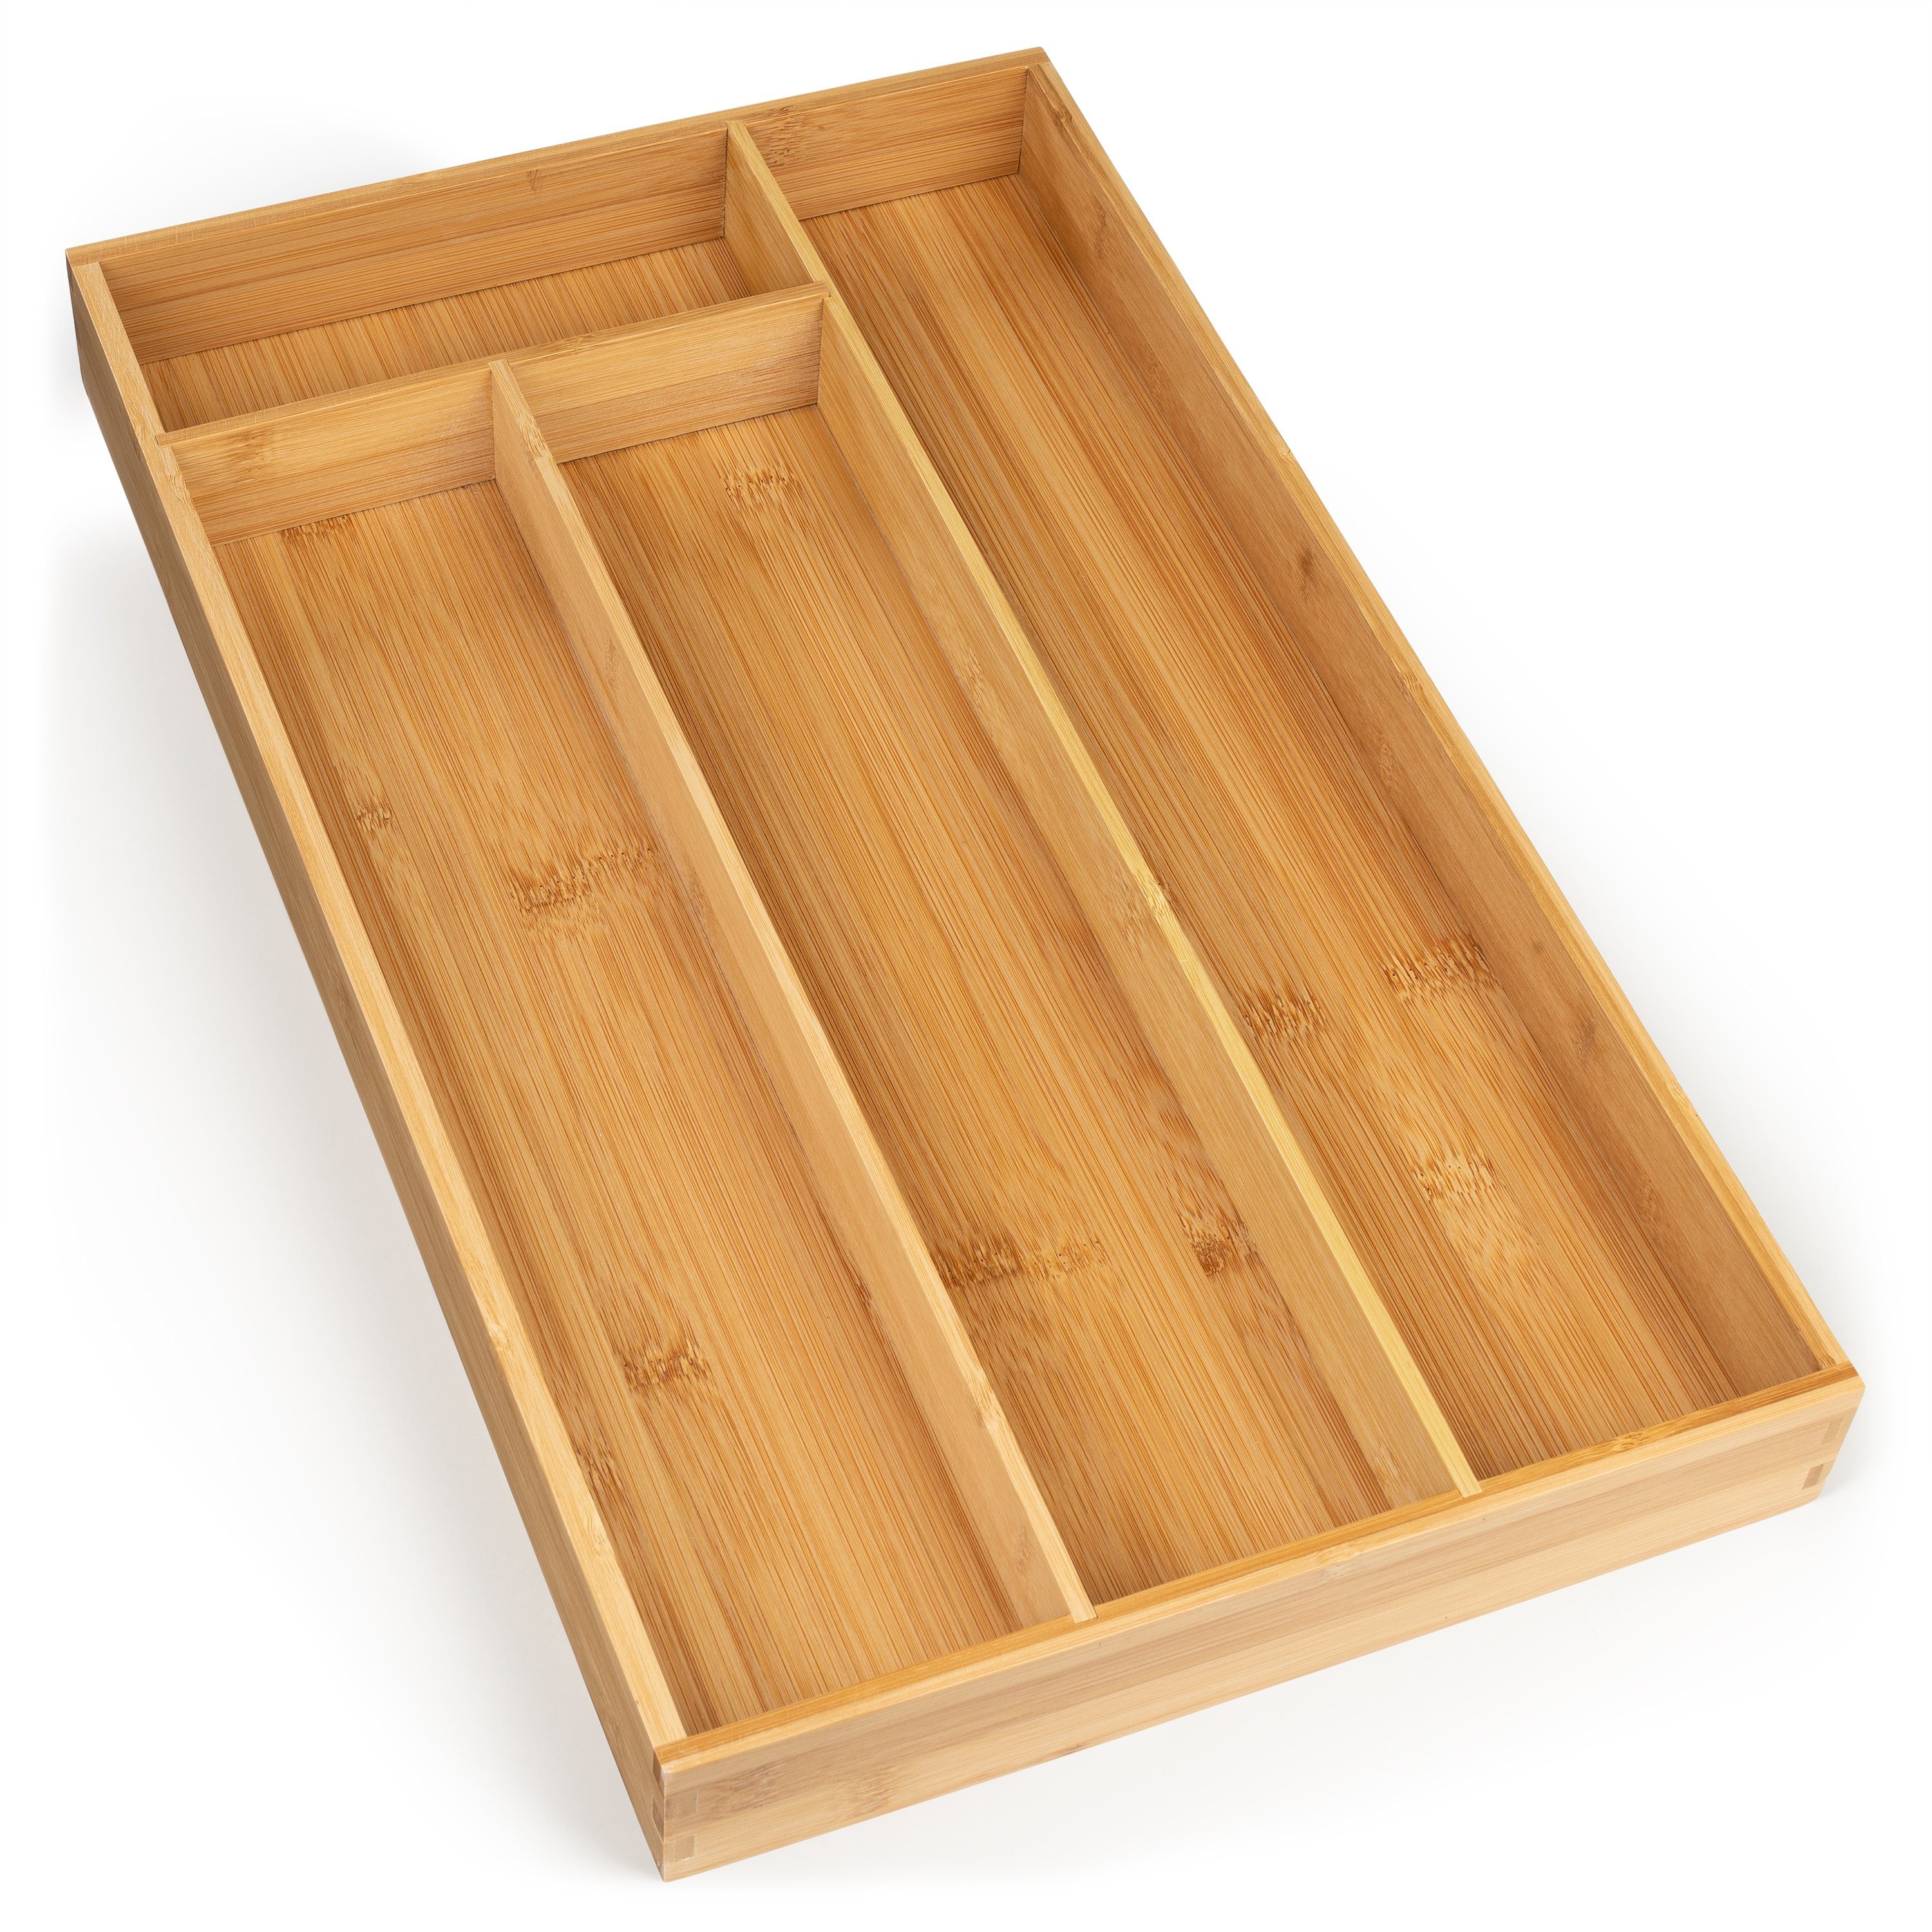 Blumtal Besteckkasten »Besteckkasten Schublade aus Bambus - Schubladen- Einsatz« online kaufen | OTTO